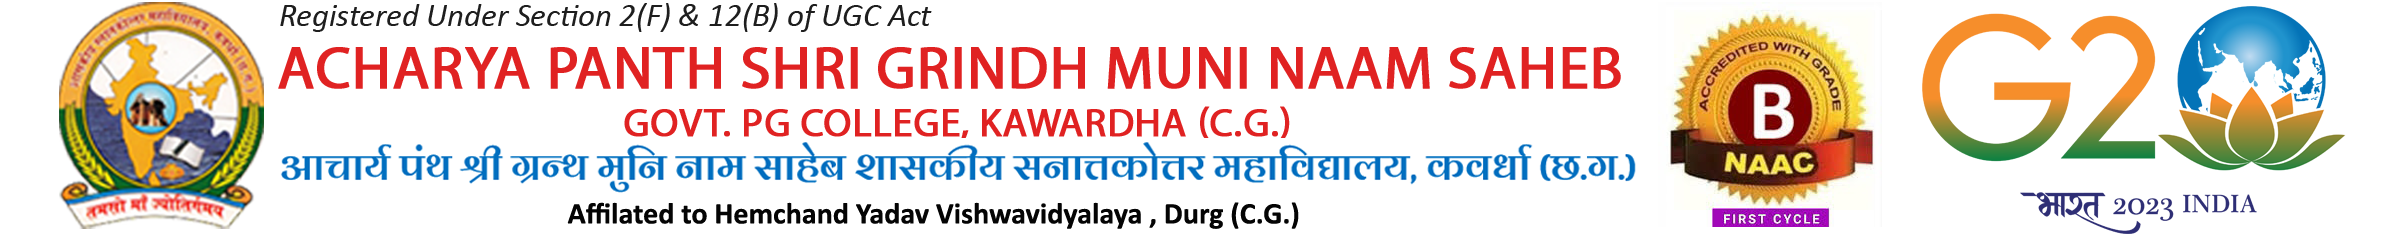 Logo - Acharya Panth Shri Grindh Muni Naam Saheb Govt. PG College Kawardha C.G.